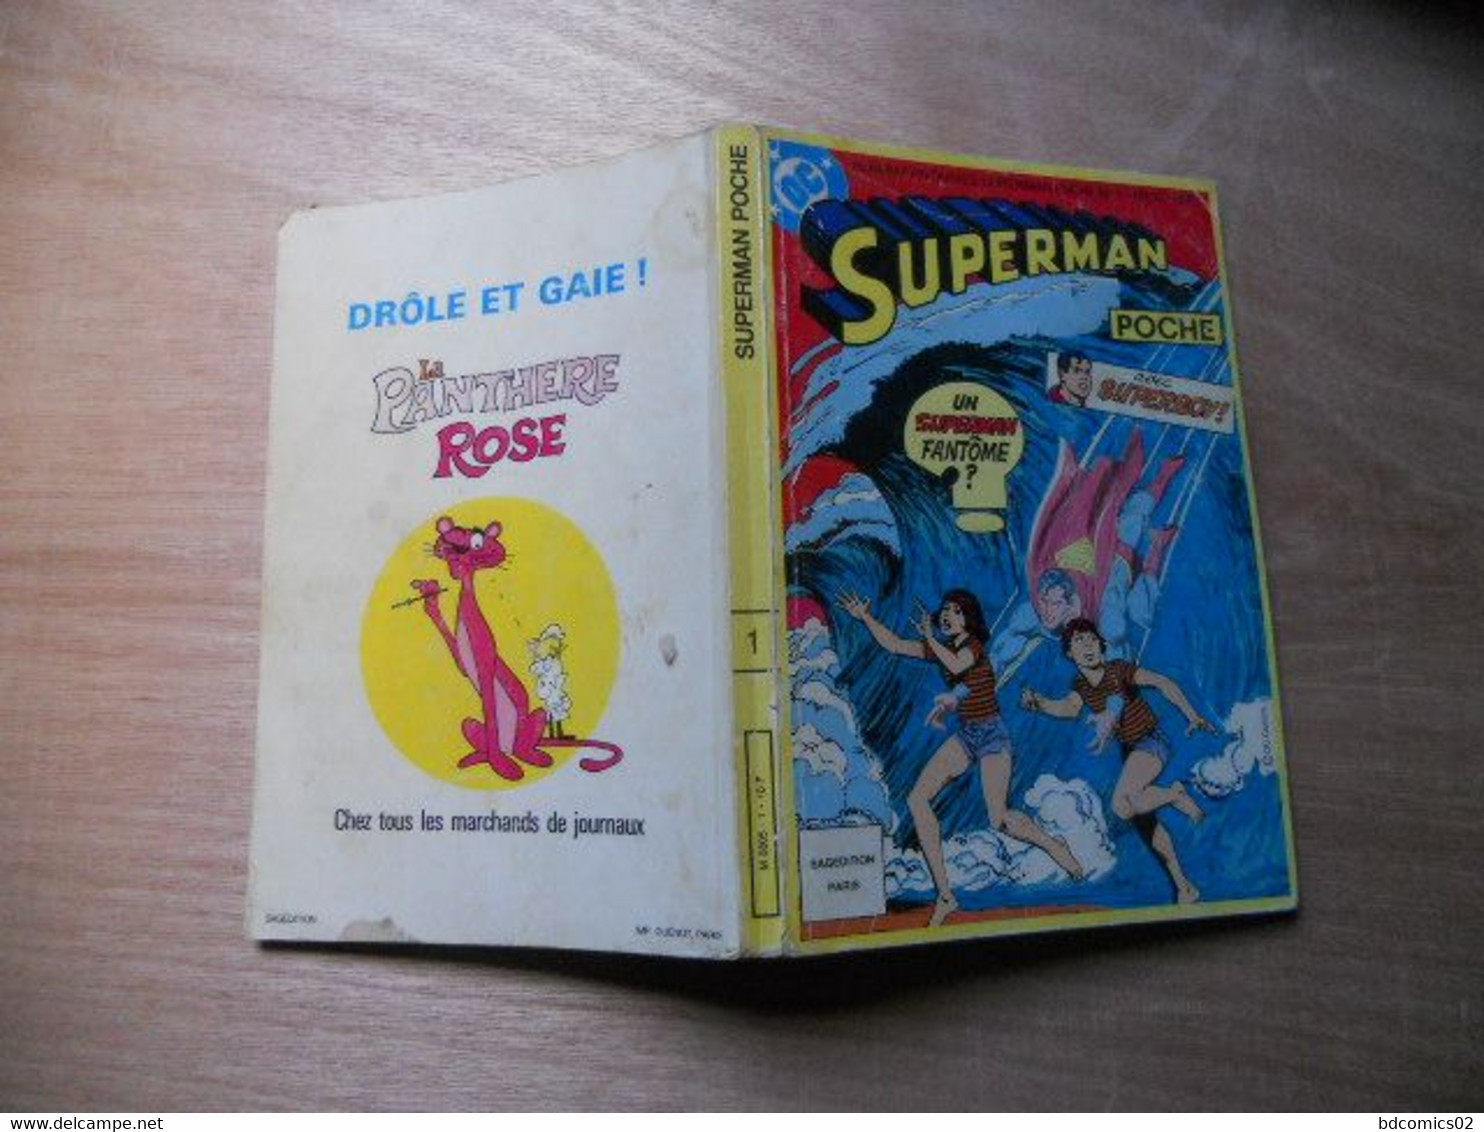 Superman Poche Album Relie N°1 Avec Les N° 68/69 Et 70/71 Sagedition 1983 - Superman